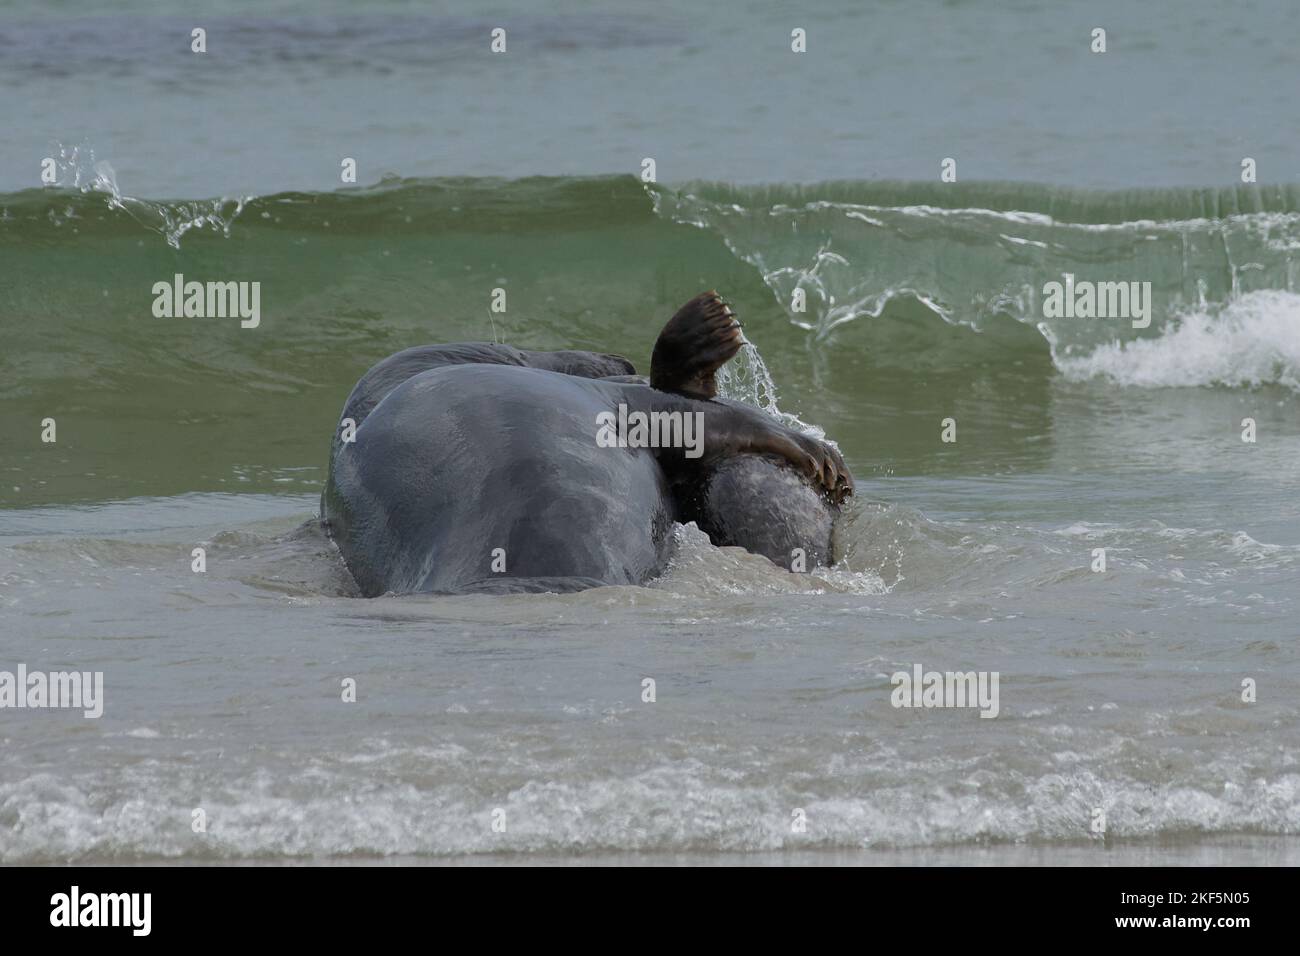 Grypus di Halichoerus, Kegelrobbe Bulle erbeutet Jungtier, toro di foca grigio che cattura un juvenil Foto Stock